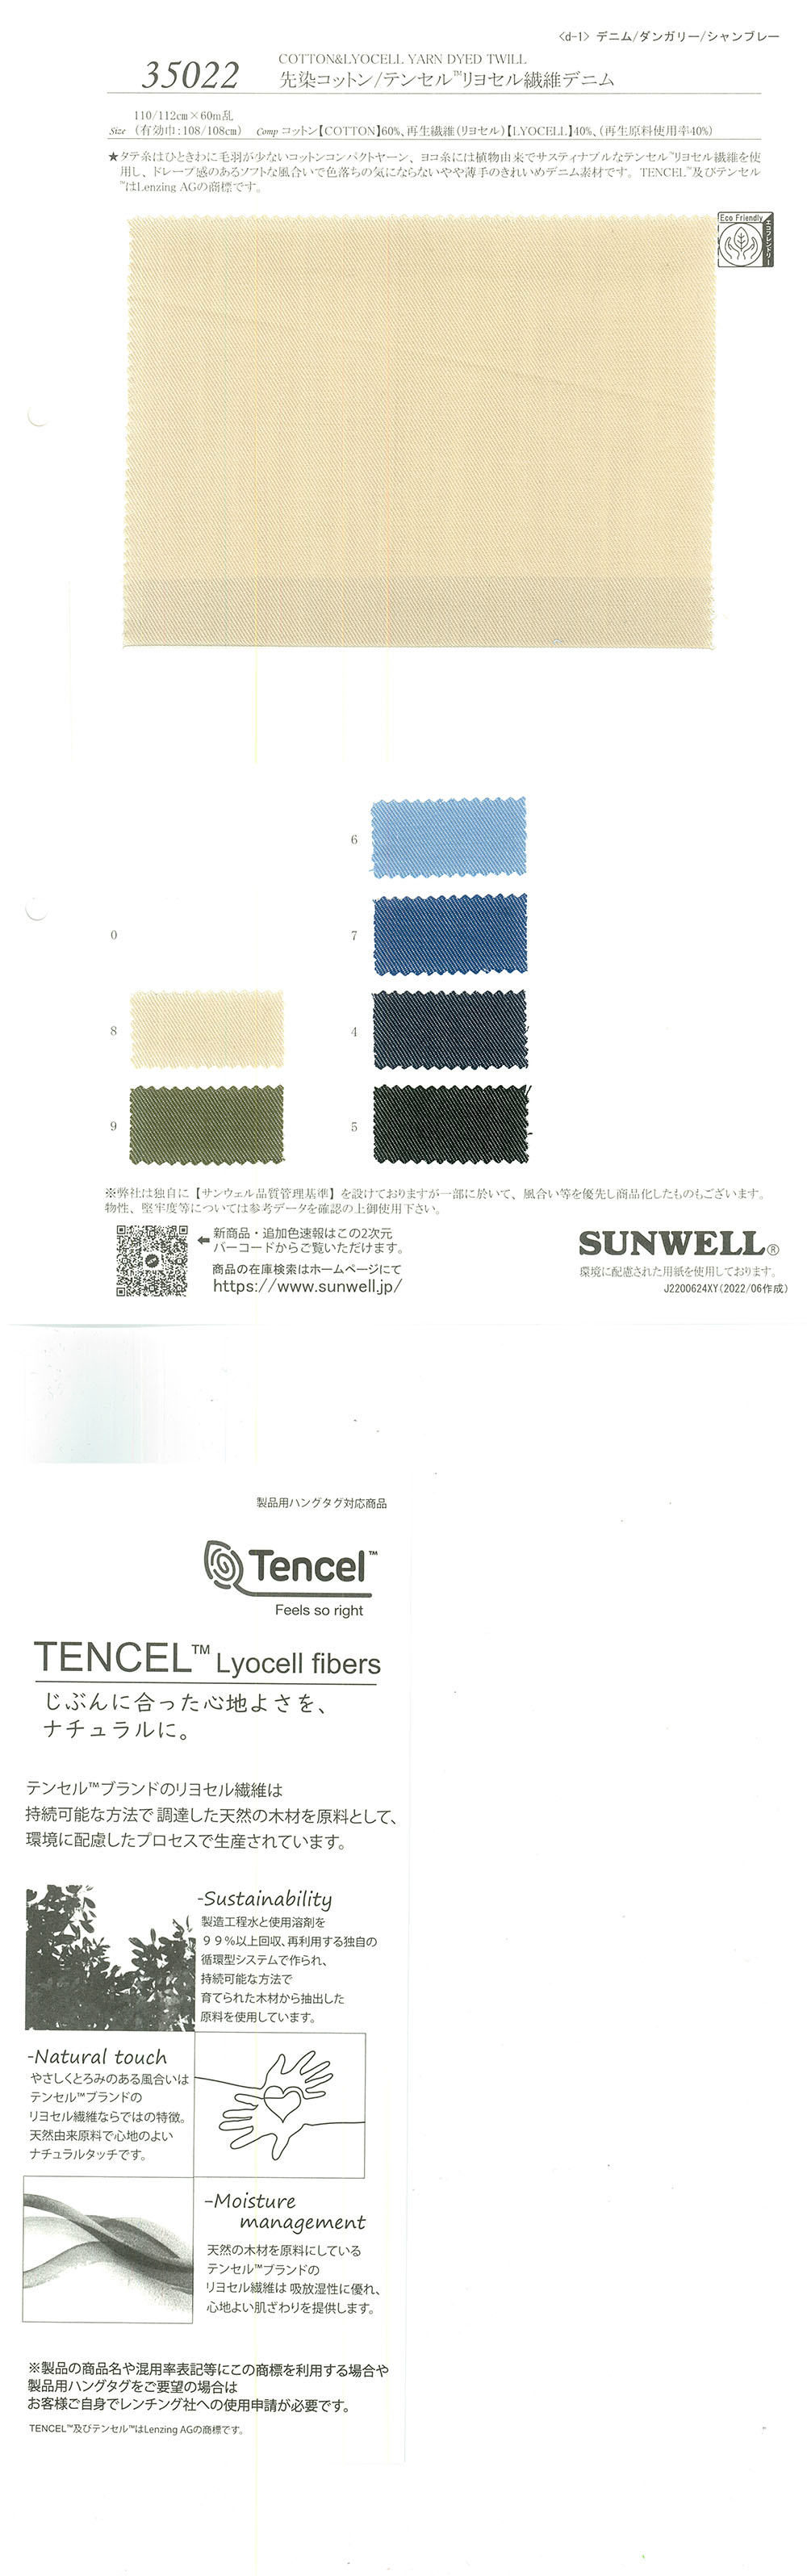 35022 Vải Bò Nhuộm Sợi Cotton/Tencel (TM) Lyocell SUNWELL ( Giếng Trời )